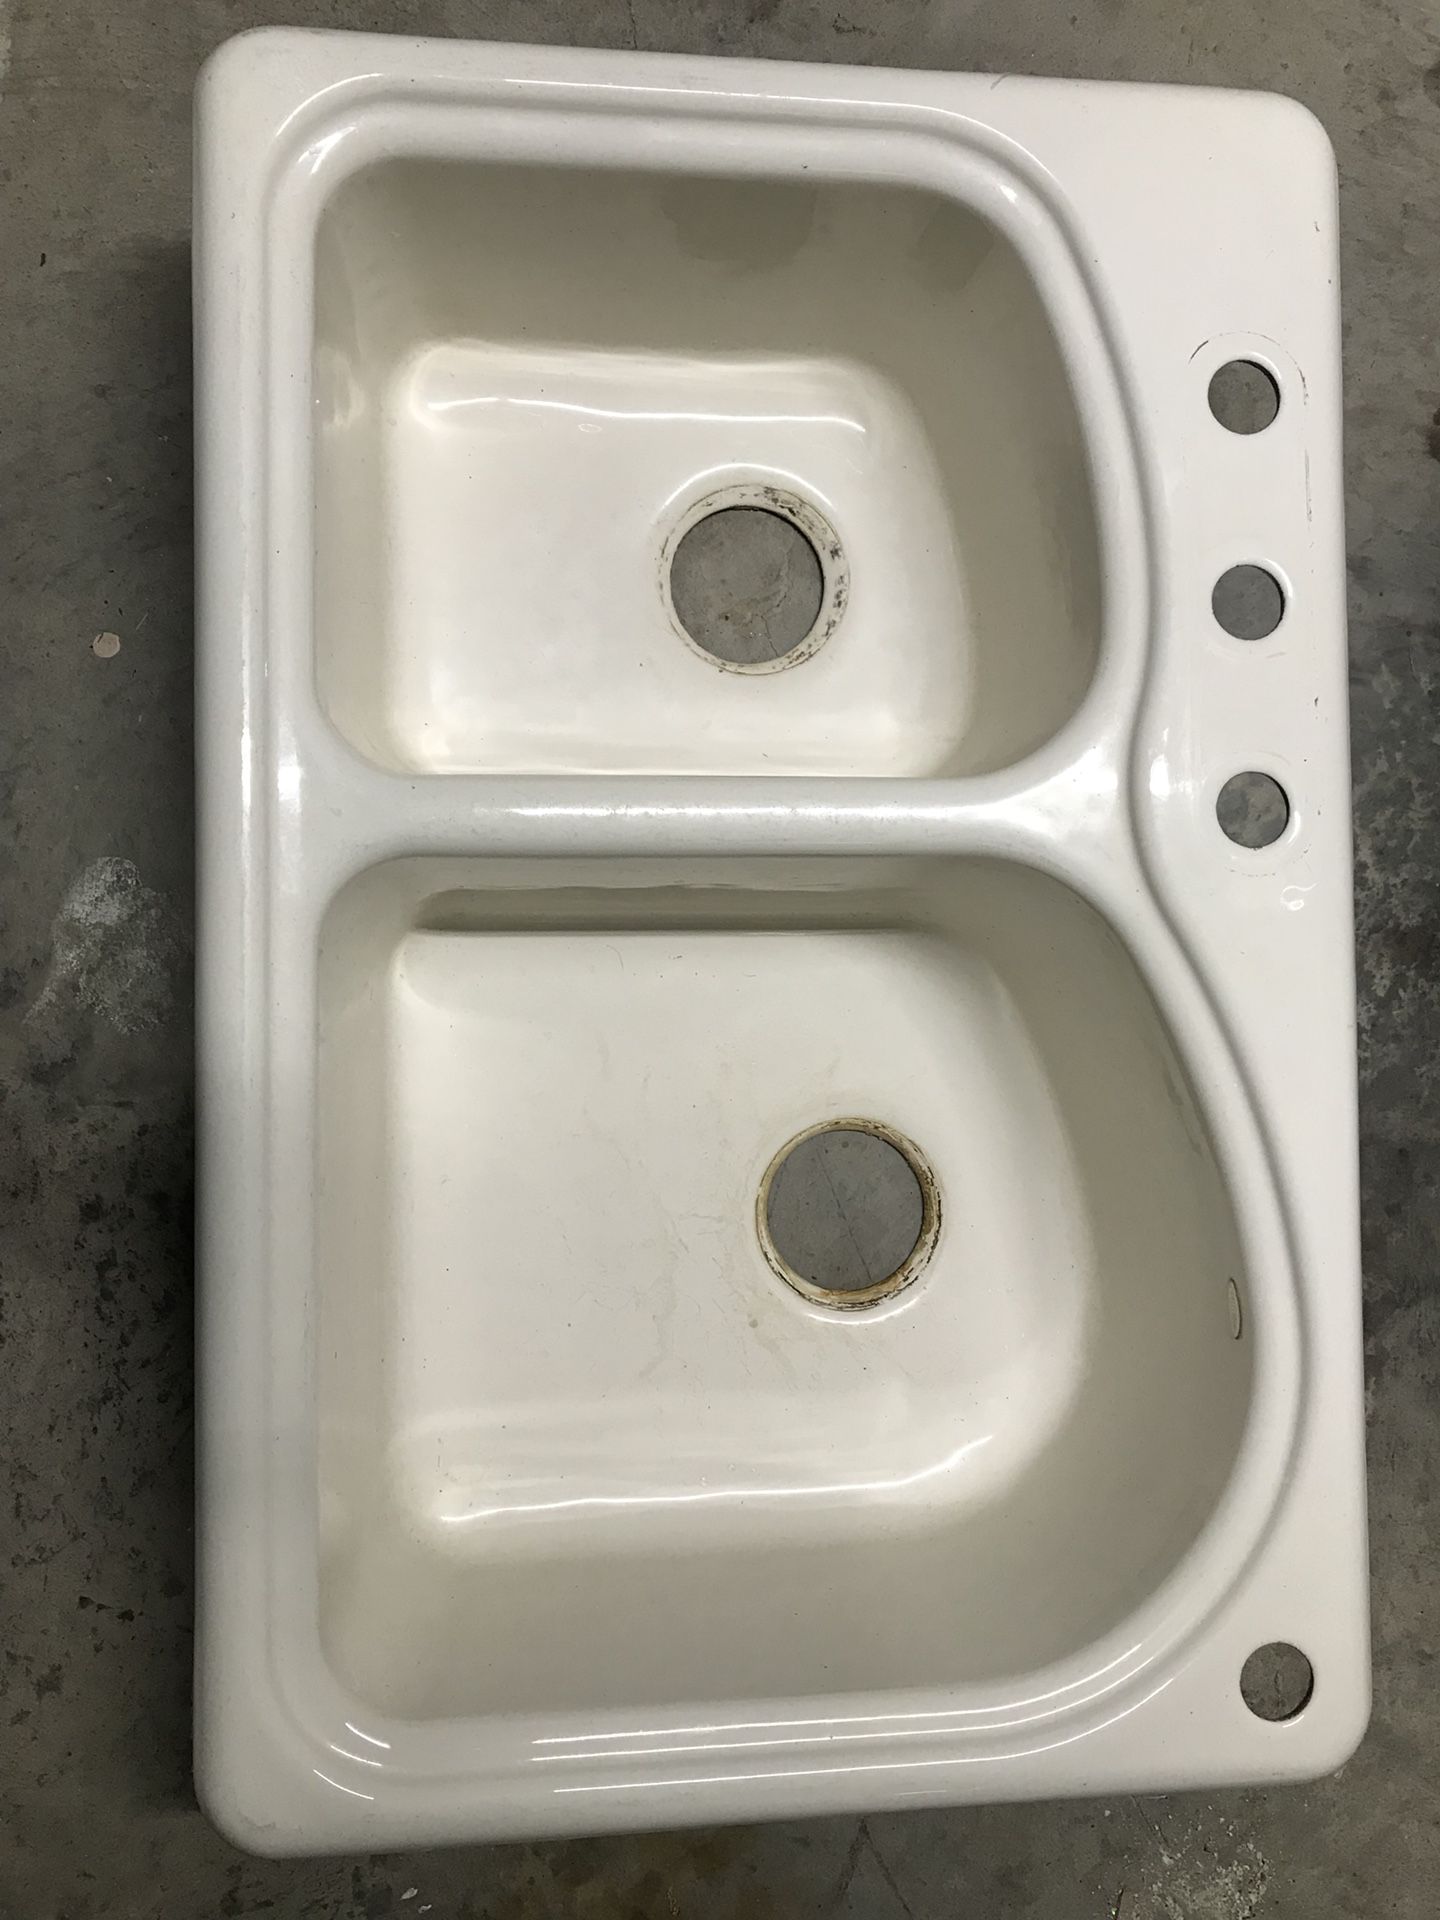 Kitchen sink - Koehler cast iron, almond color